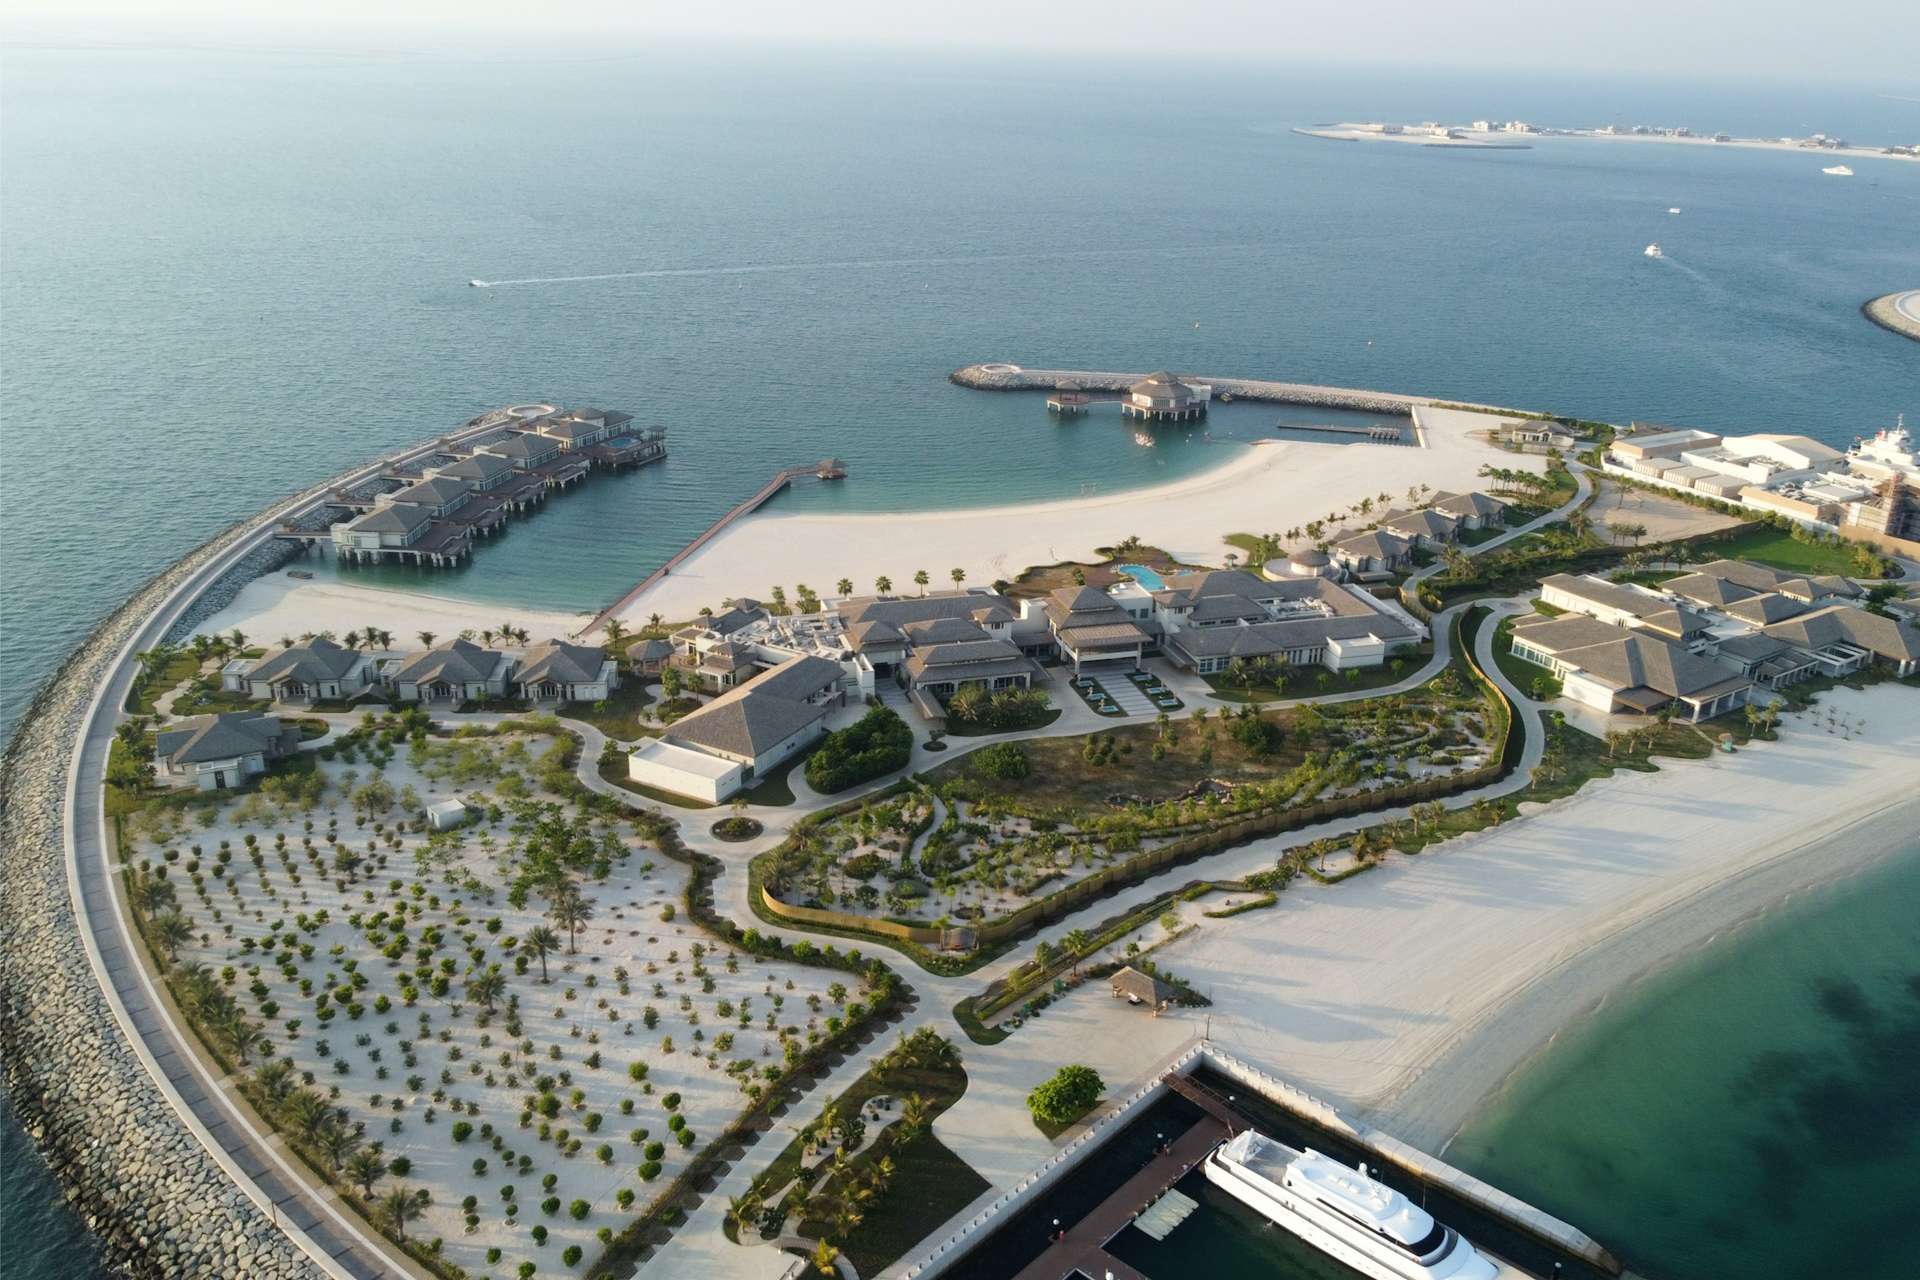 Jumeirah Beach, Dubai